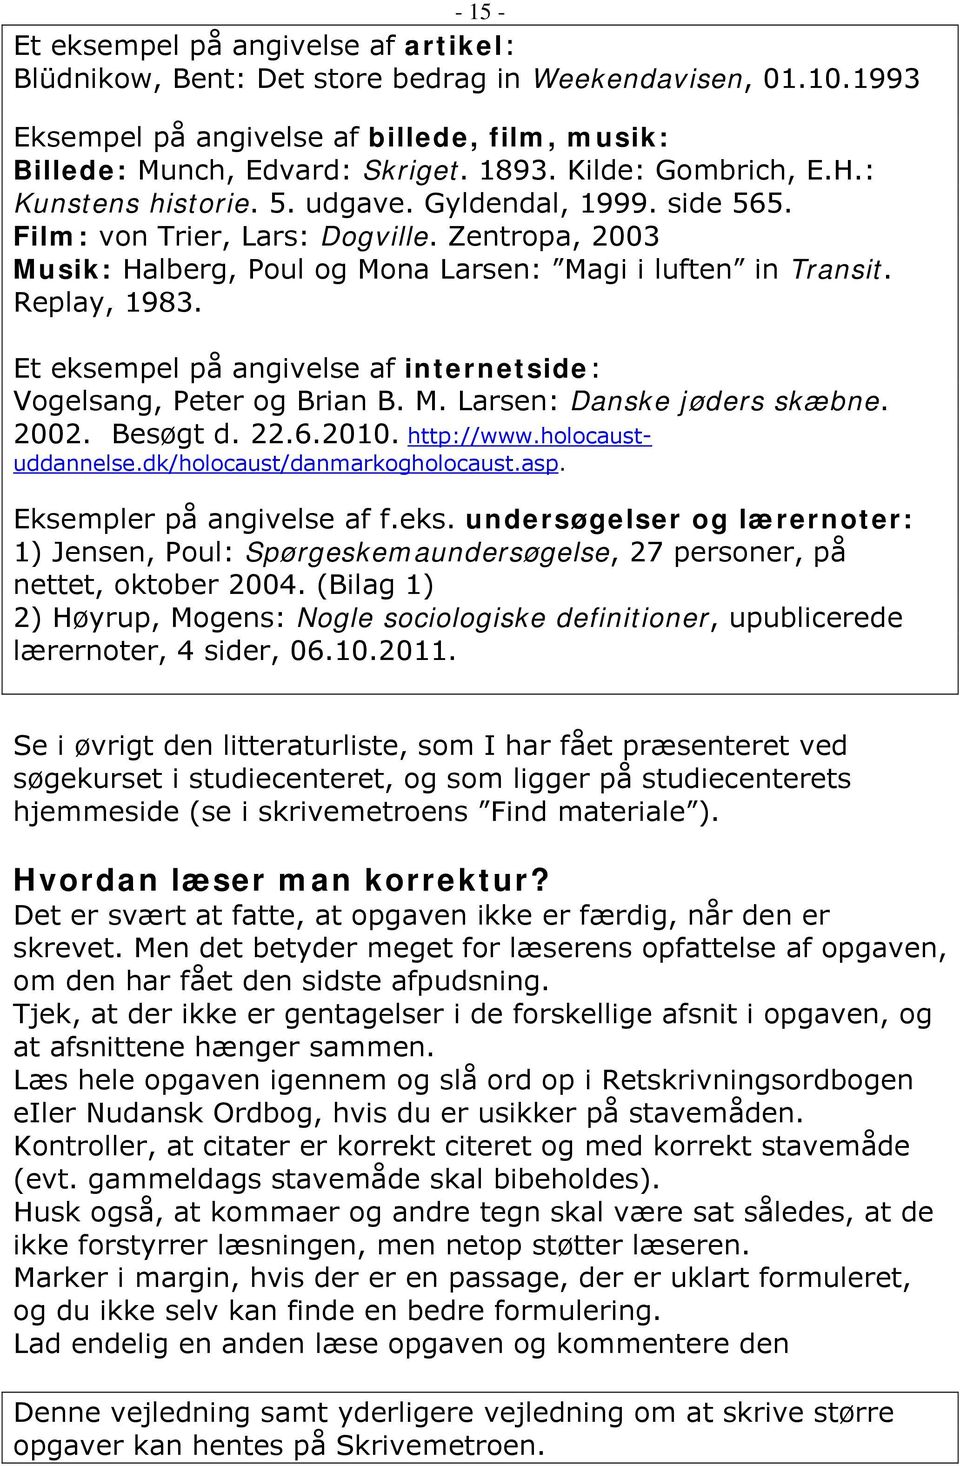 Replay, 1983. Et eksempel på angivelse af internetside: Vogelsang, Peter og Brian B. M. Larsen: Danske jøders skæbne. 2002. Besøgt d. 22.6.2010. http://www.holocaustuddannelse.